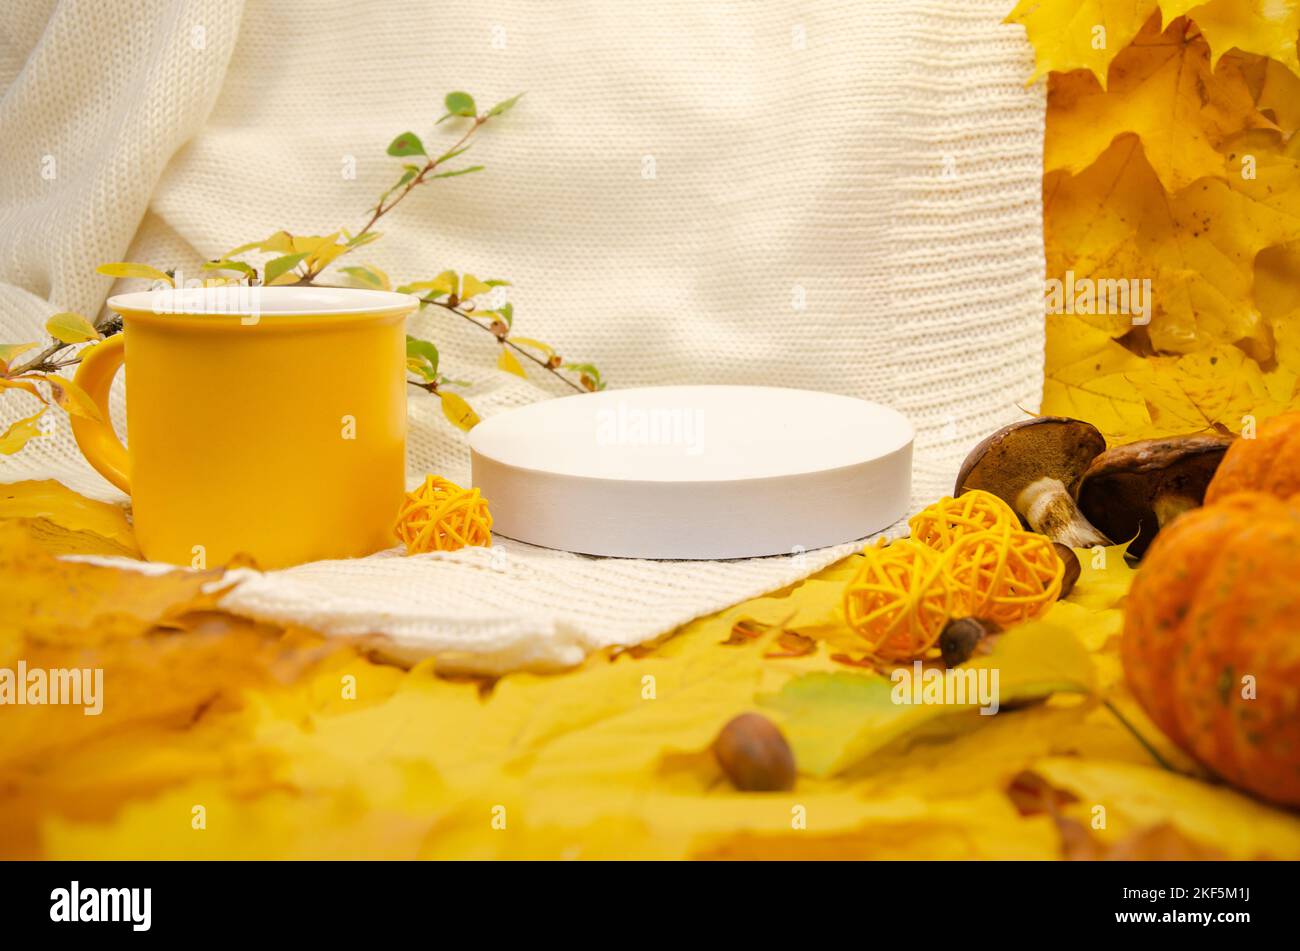 L'automne encore vie dans les tons jaune-orange: Un blanc tricoté plaid et des feuilles, gros plan vide podium scène blanche Banque D'Images